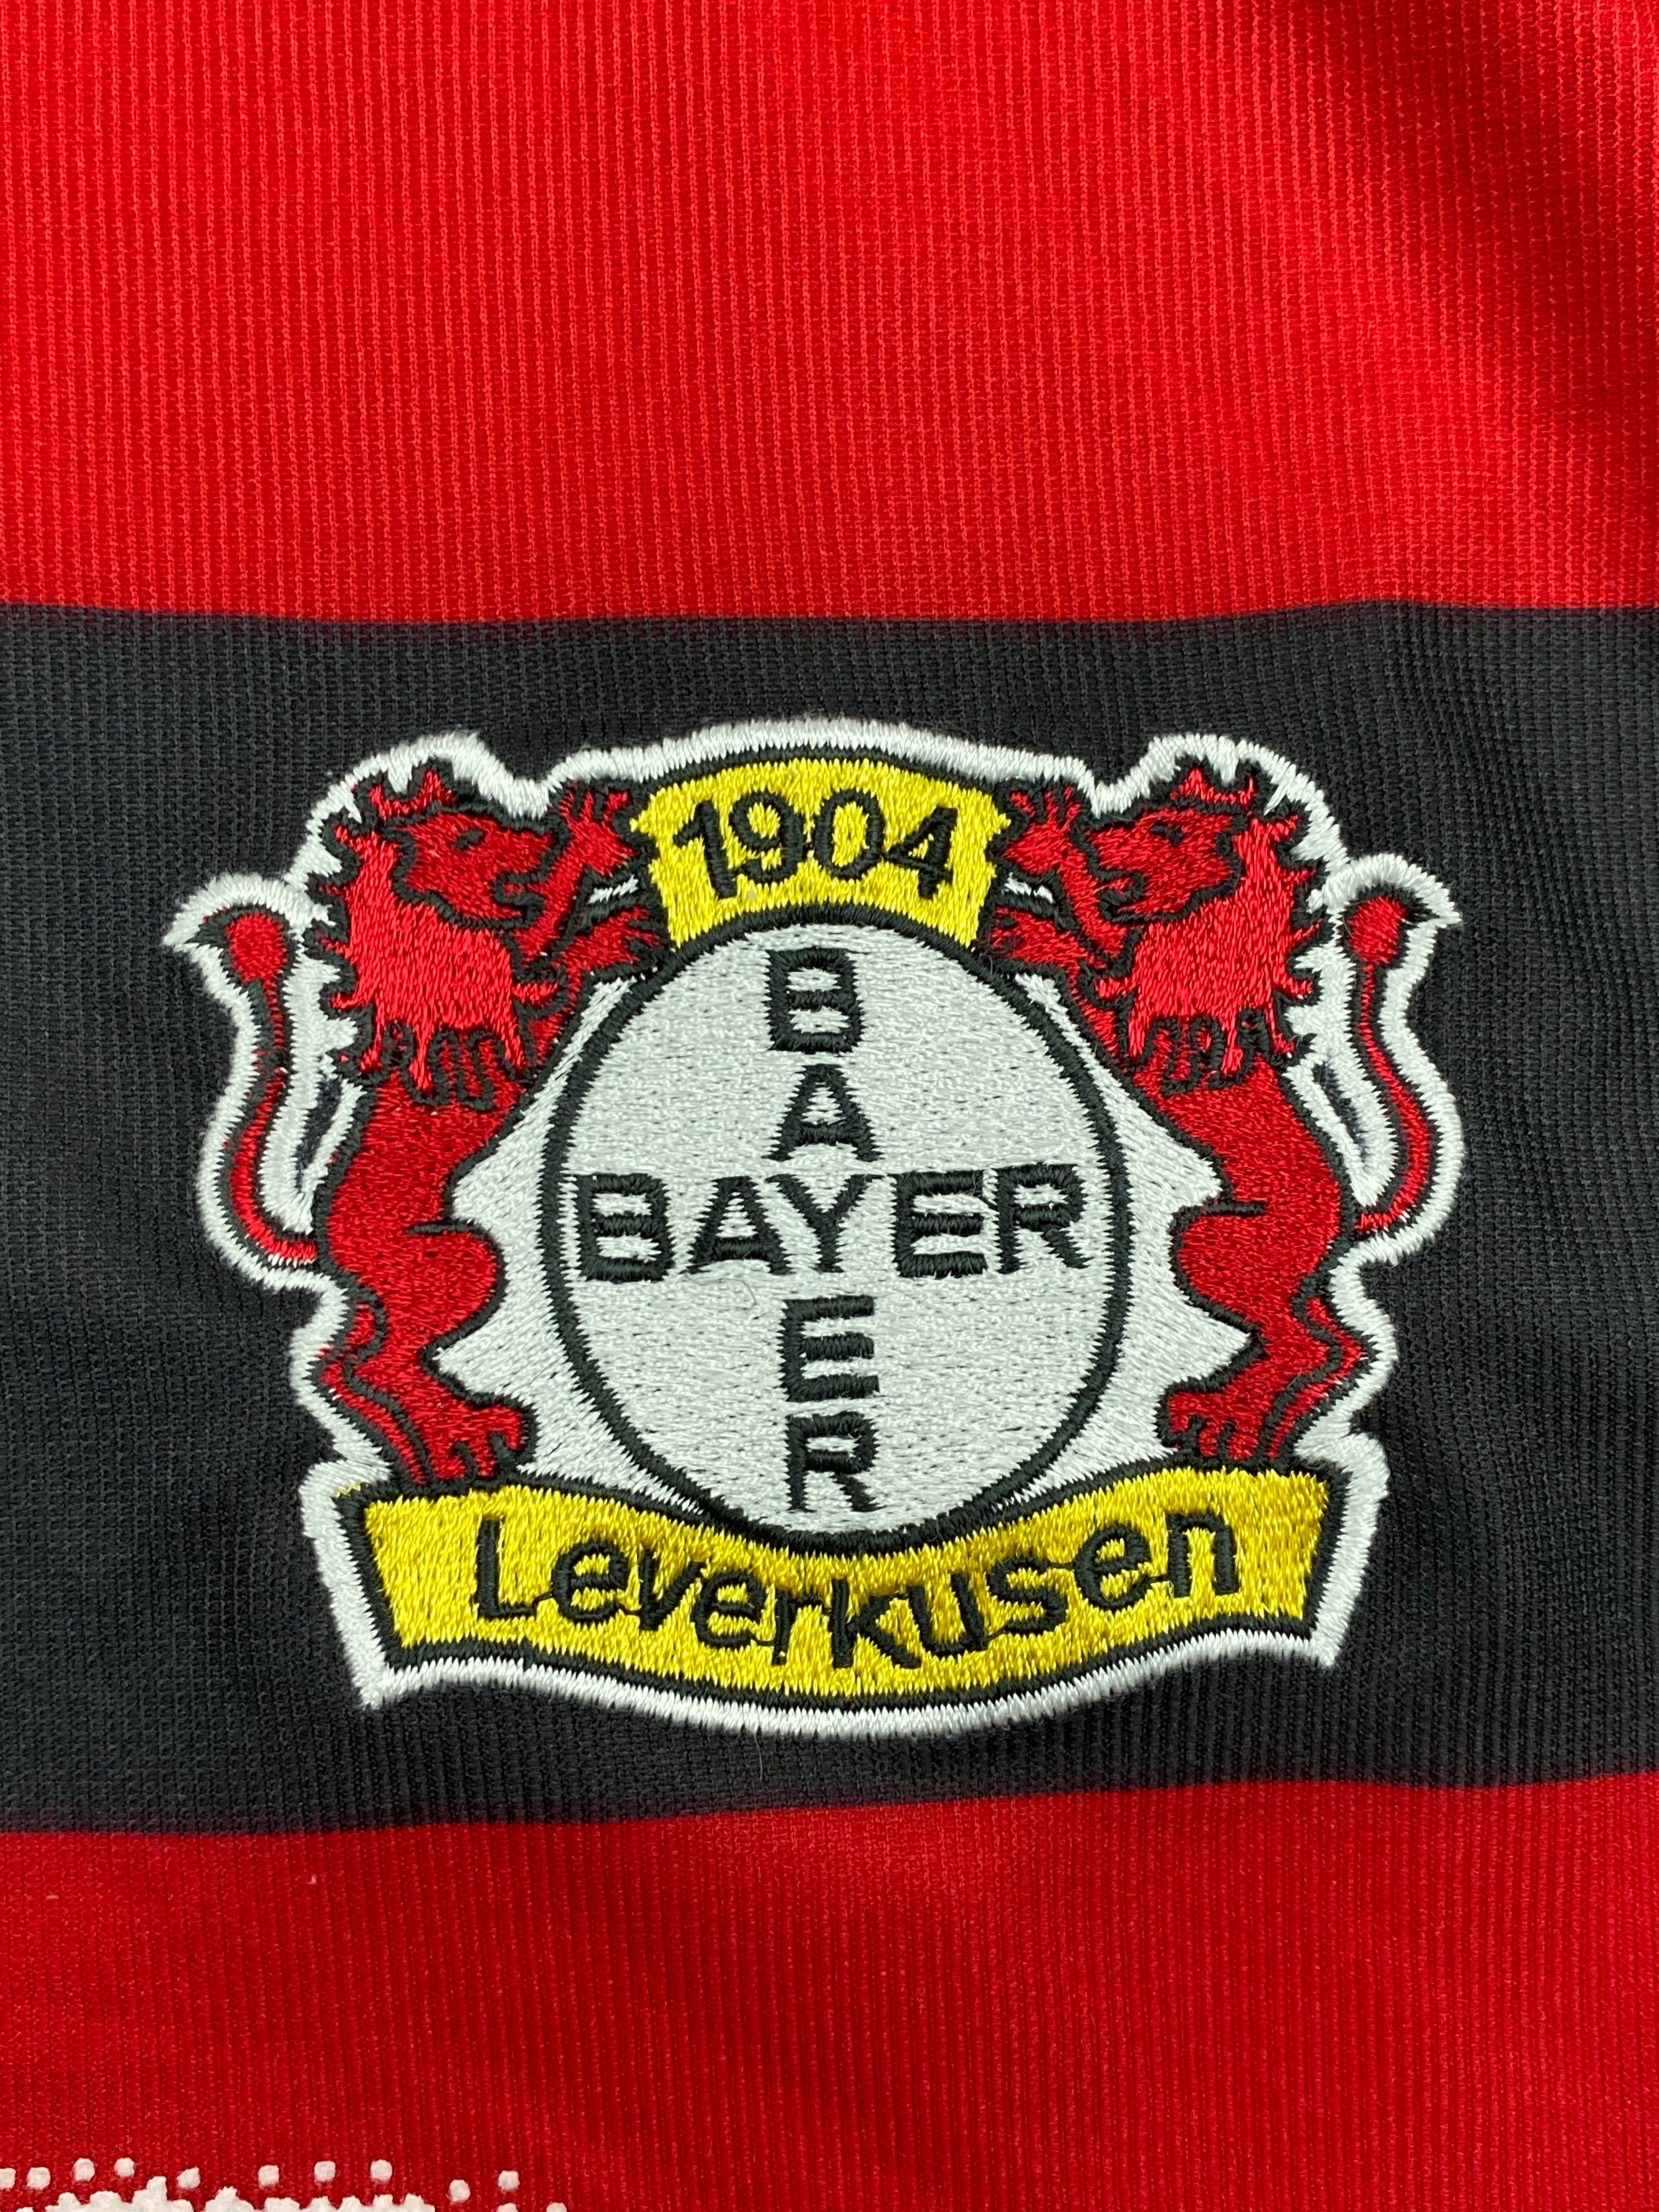 2002/04 Bayer Leverkusen Home shirt (M) 8.5/10